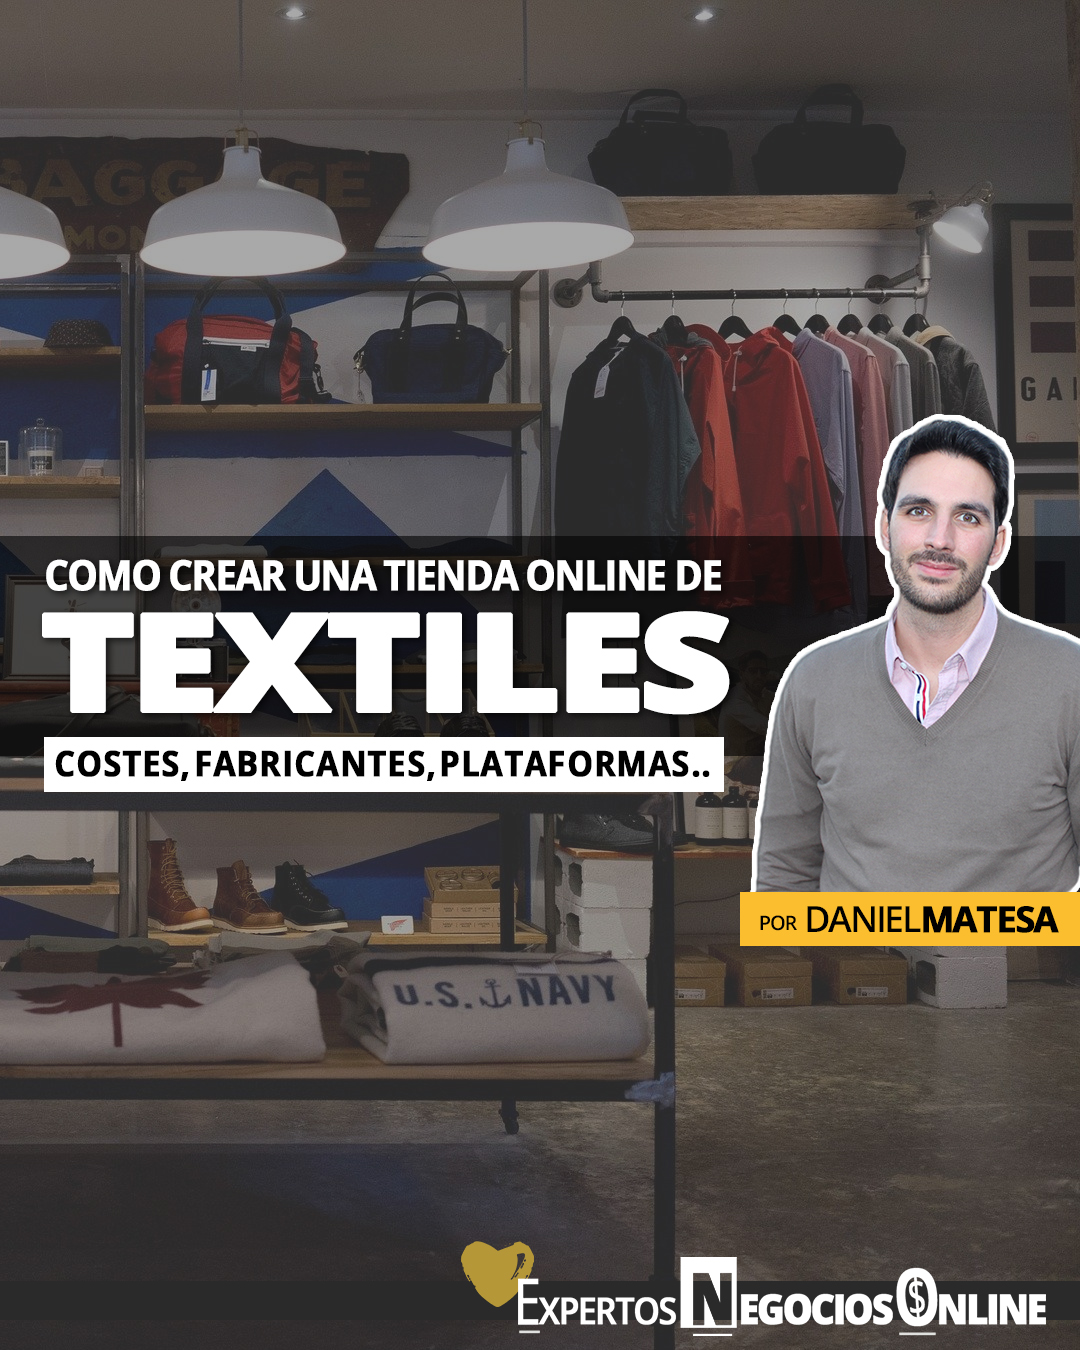 Cómo crear y vender con una tienda online de ropa y textiles